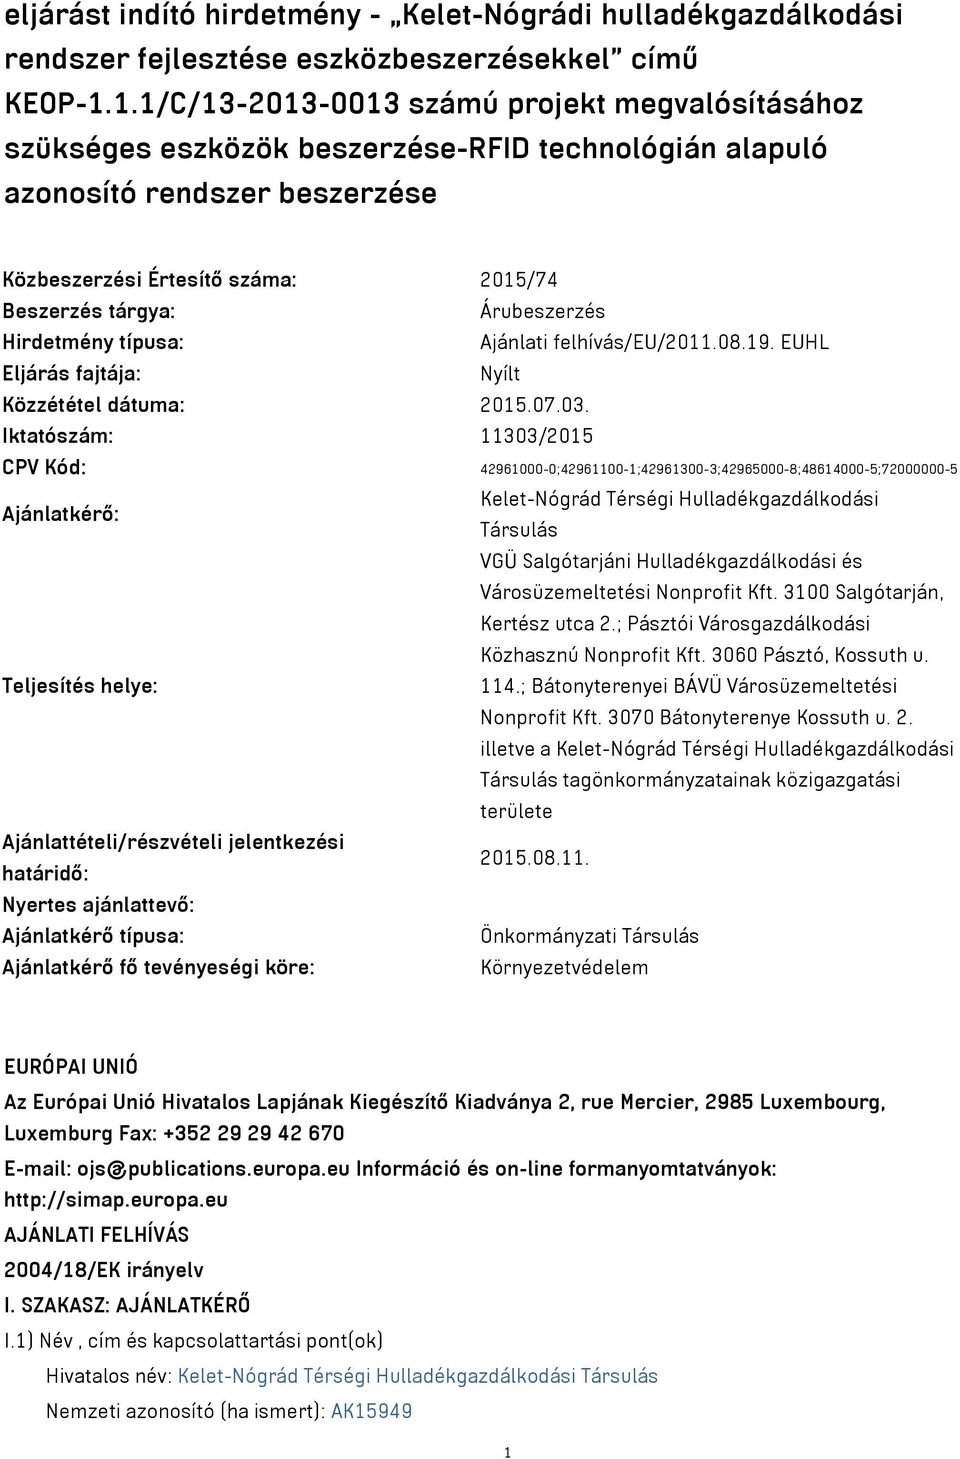 Árubeszerzés Hirdetmény típusa: Ajánlati felhívás/eu/2011.08.19. EUHL Eljárás fajtája: Nyílt Közzététel dátuma: 2015.07.03.